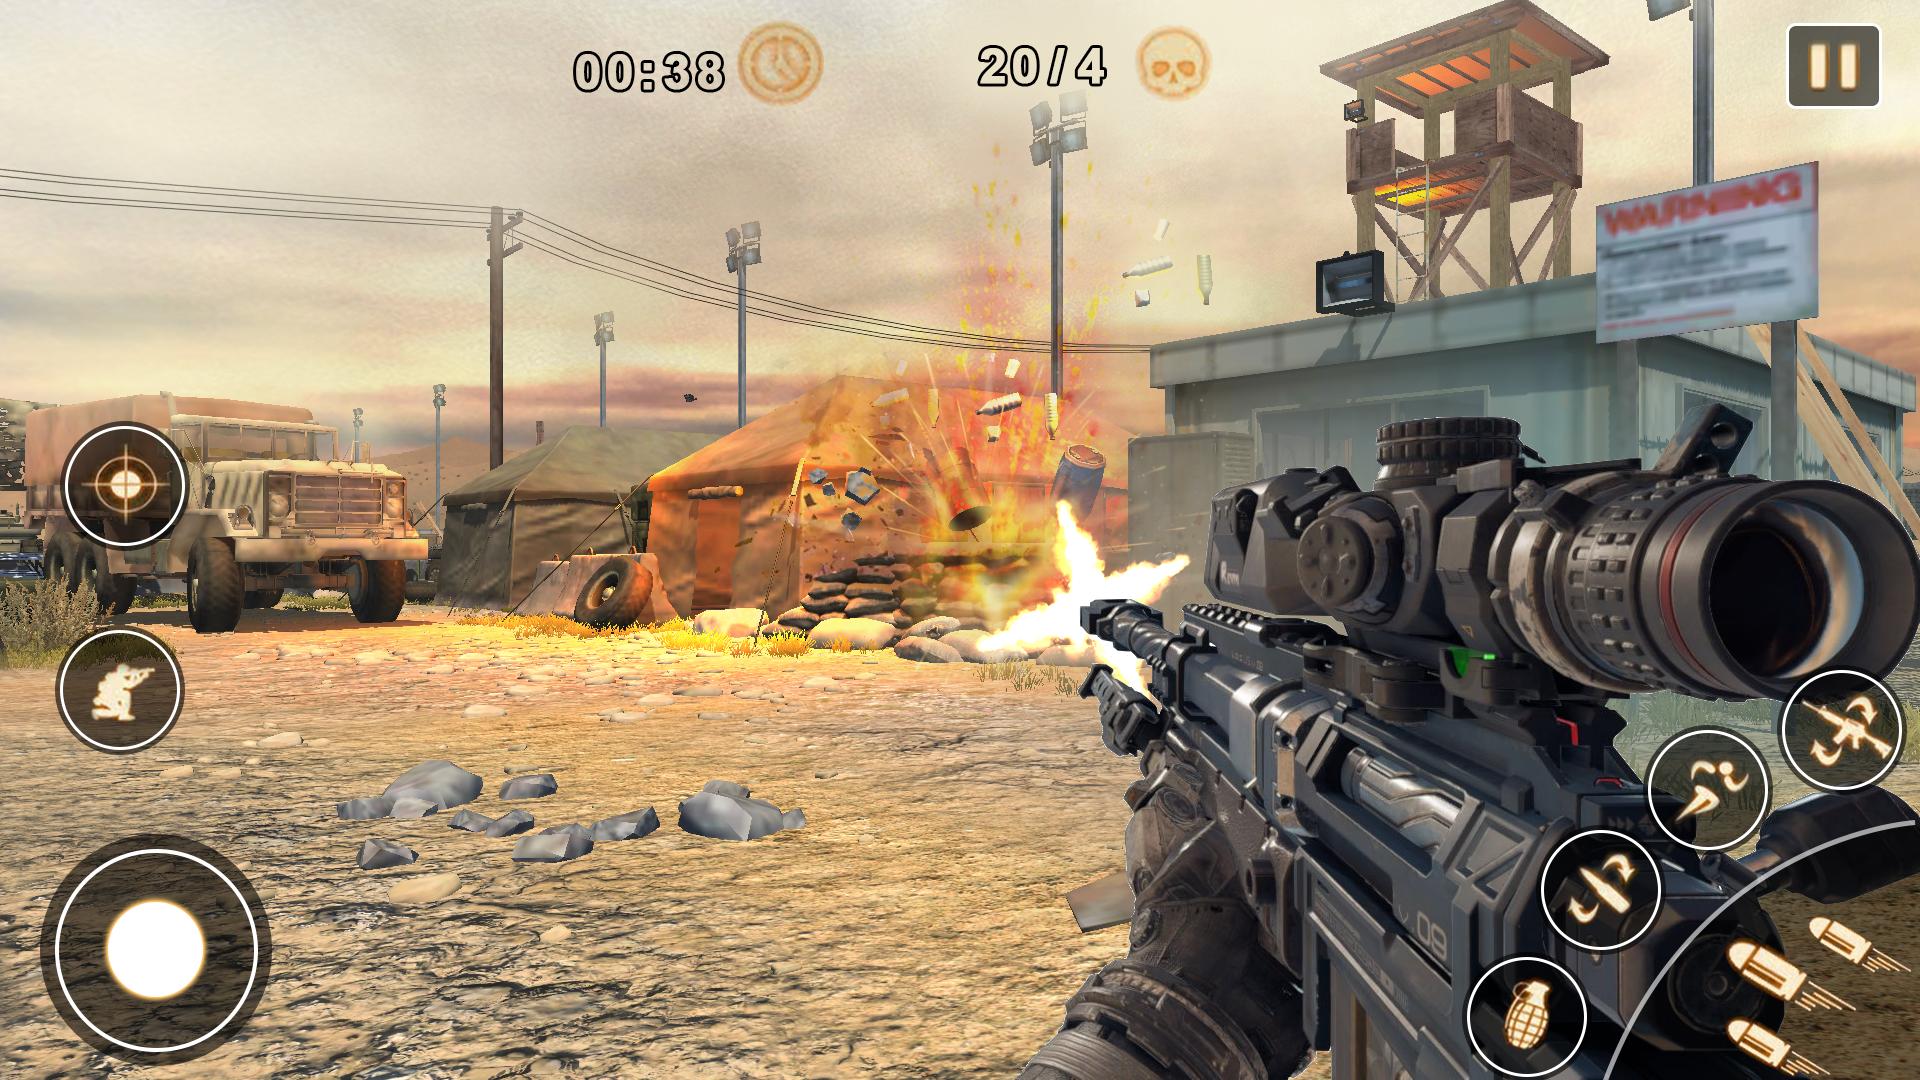 Описание для Sniper Master 3d Shooting: Free Fun Games Gun Game.